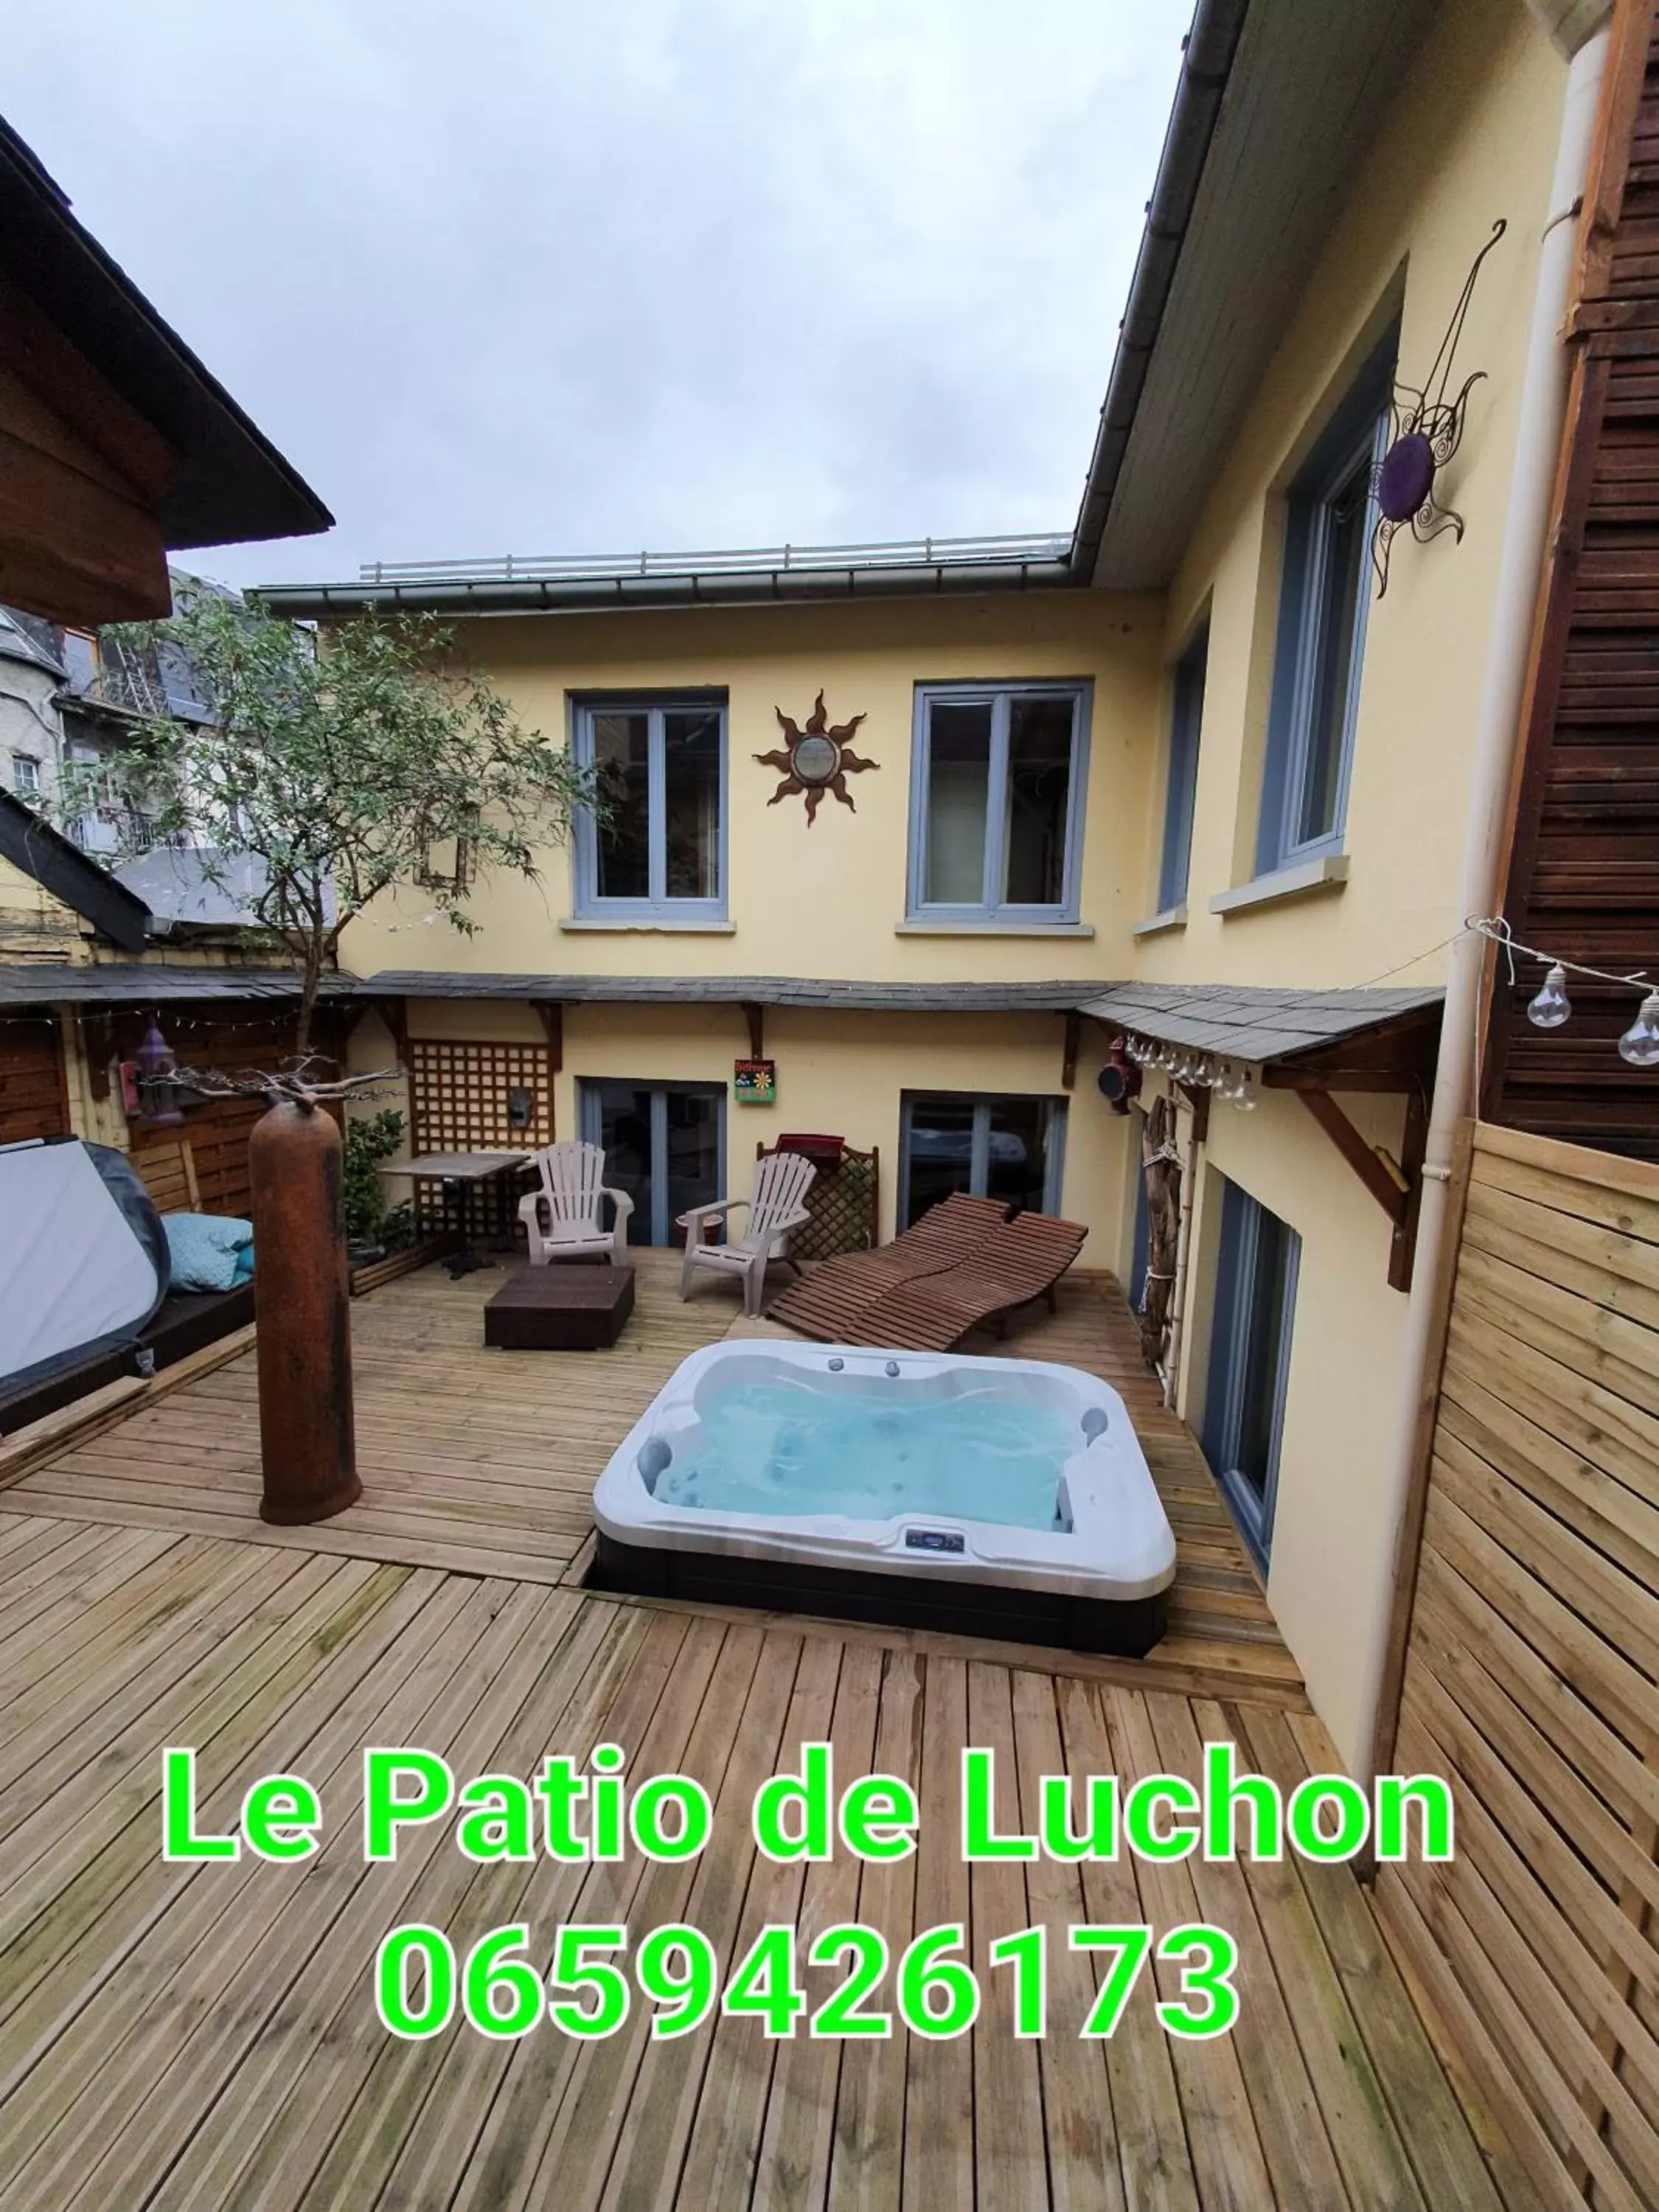 Property Building in Le Patio de Luchon